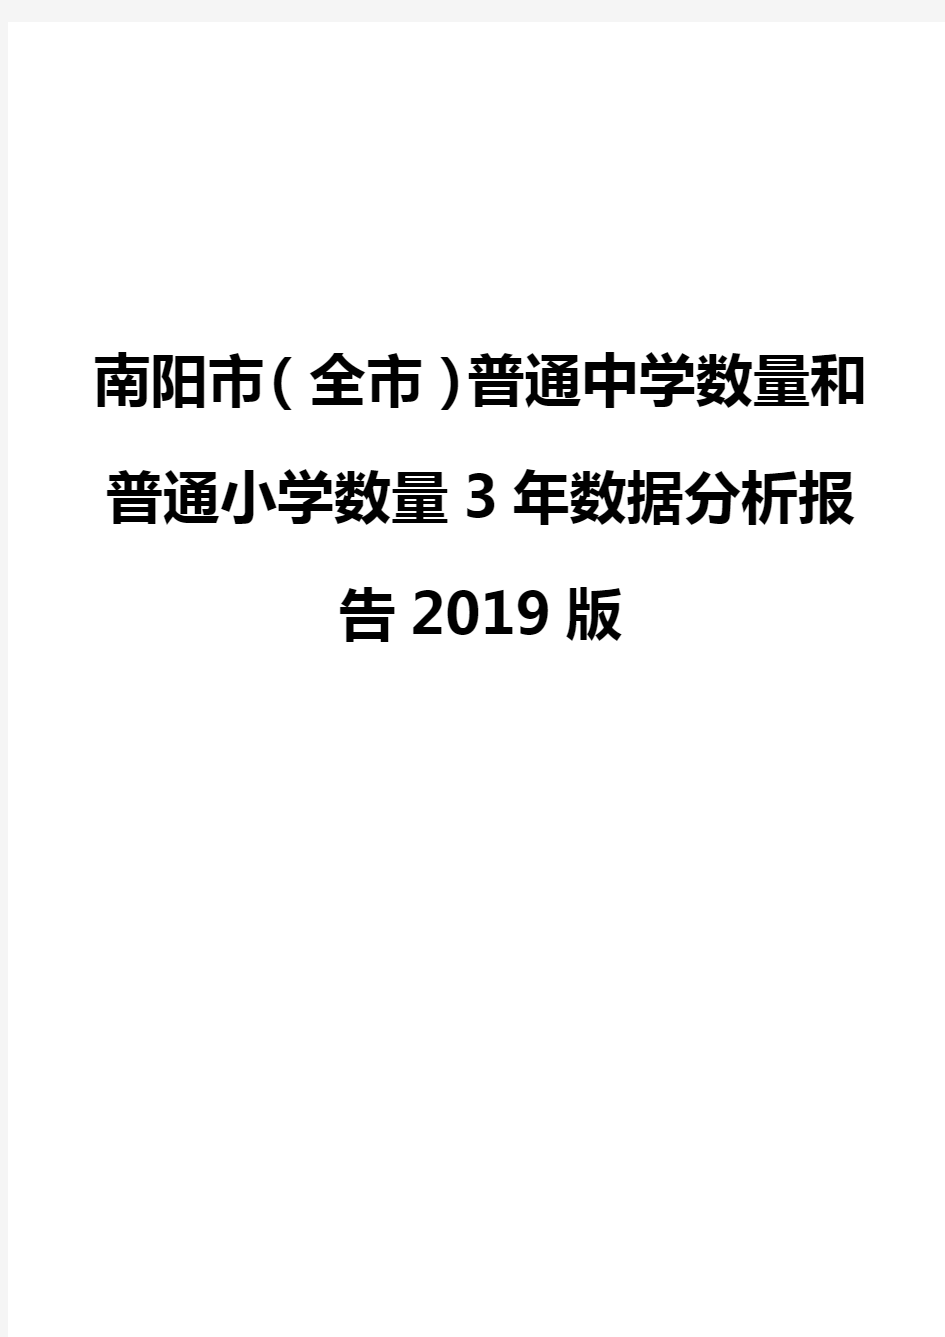 南阳市(全市)普通中学数量和普通小学数量3年数据分析报告2019版